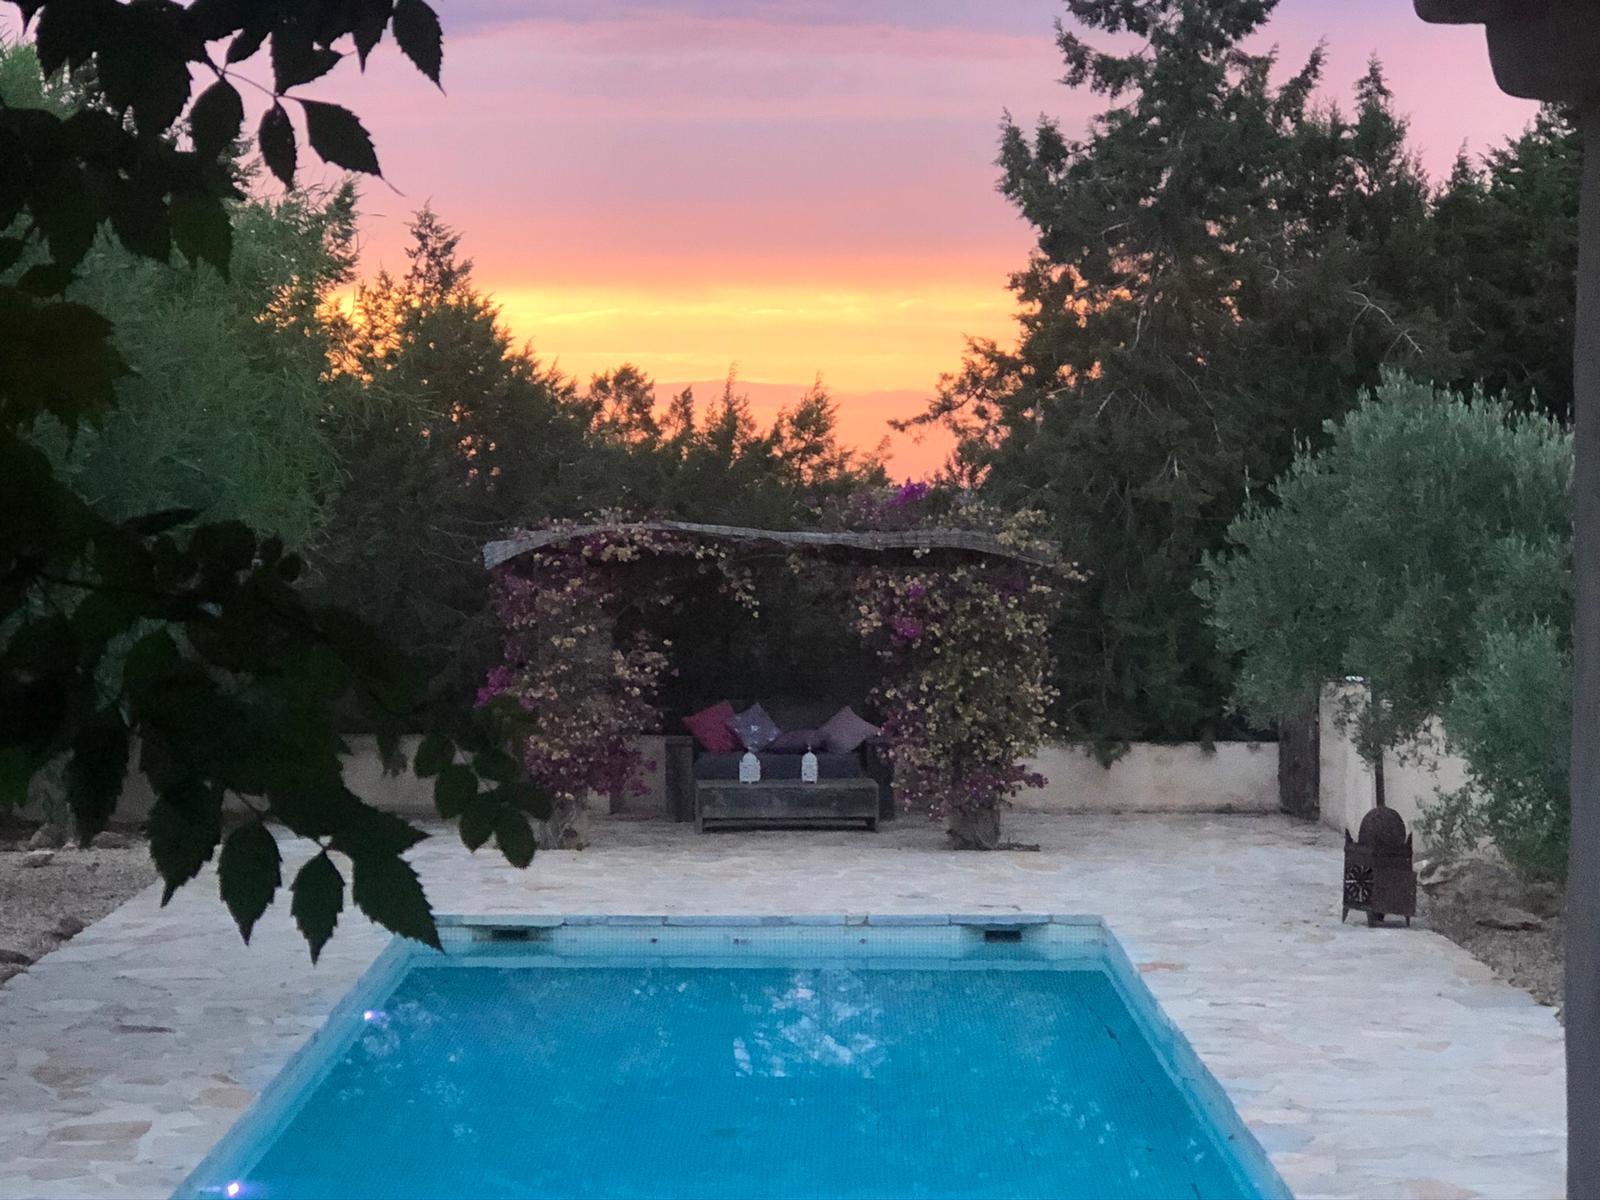 Prachtige villa gelegen in een rustige omgeving van Ibiza